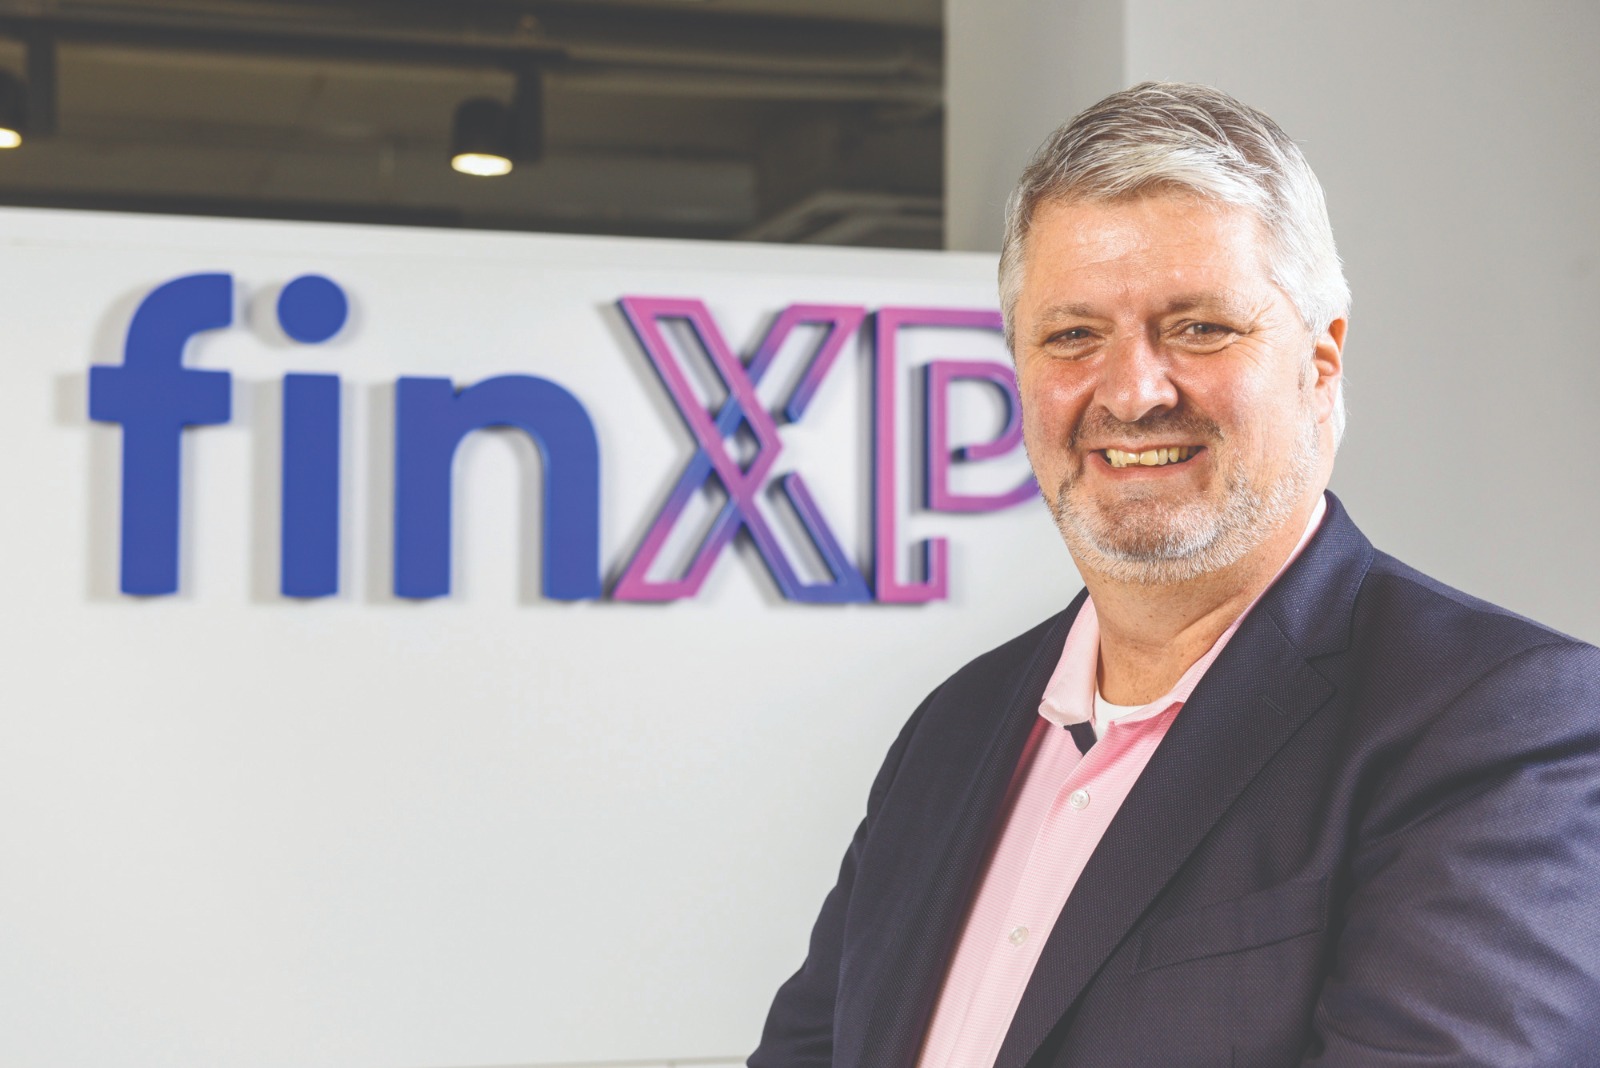 FinXP CEO Jens Podewski by Alan Carville